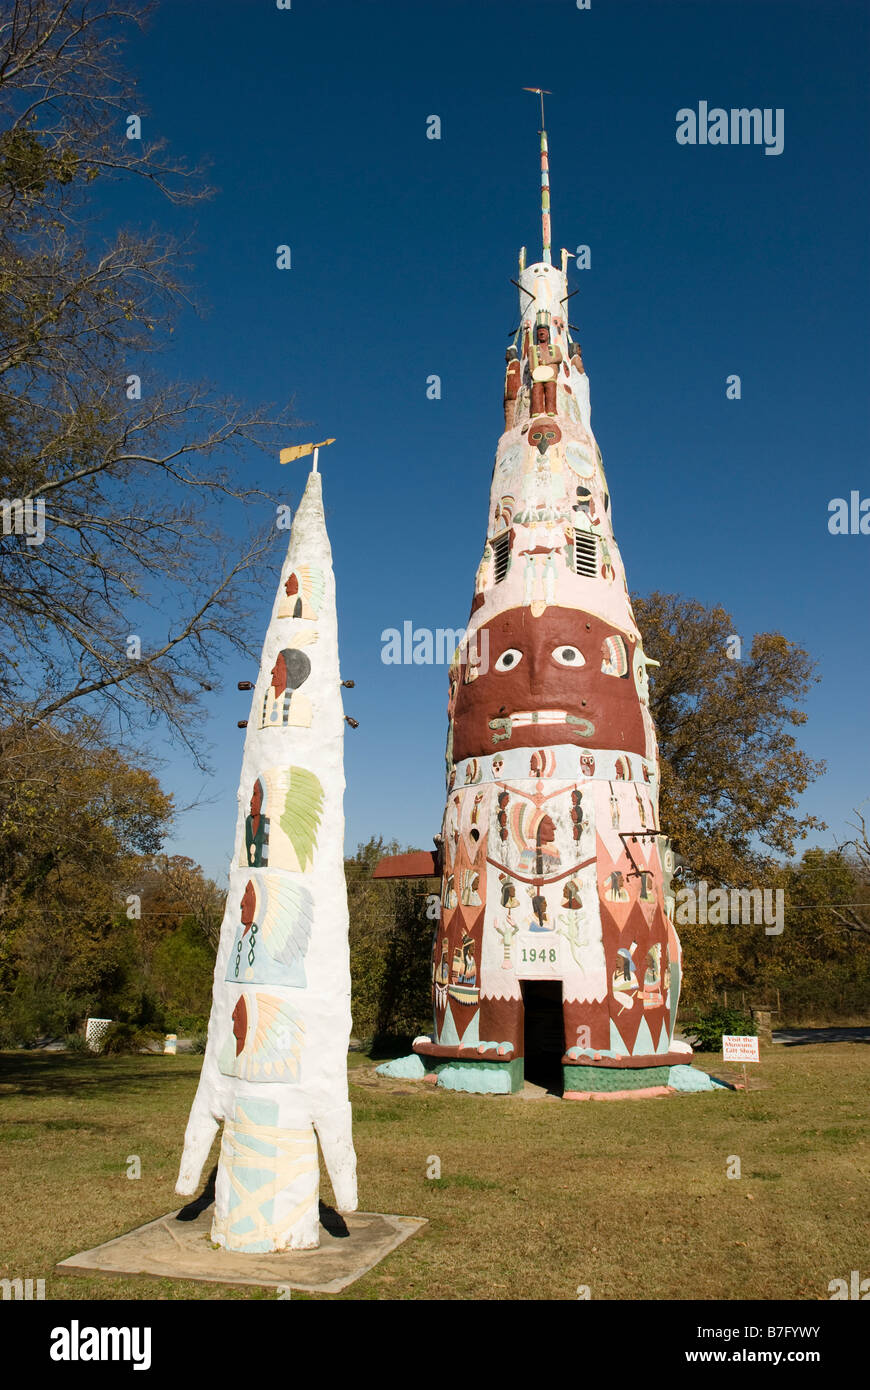 Ed Galloway's Totem Pole Park, Foyil, Oklahoma, USA Stock Photo - Alamy